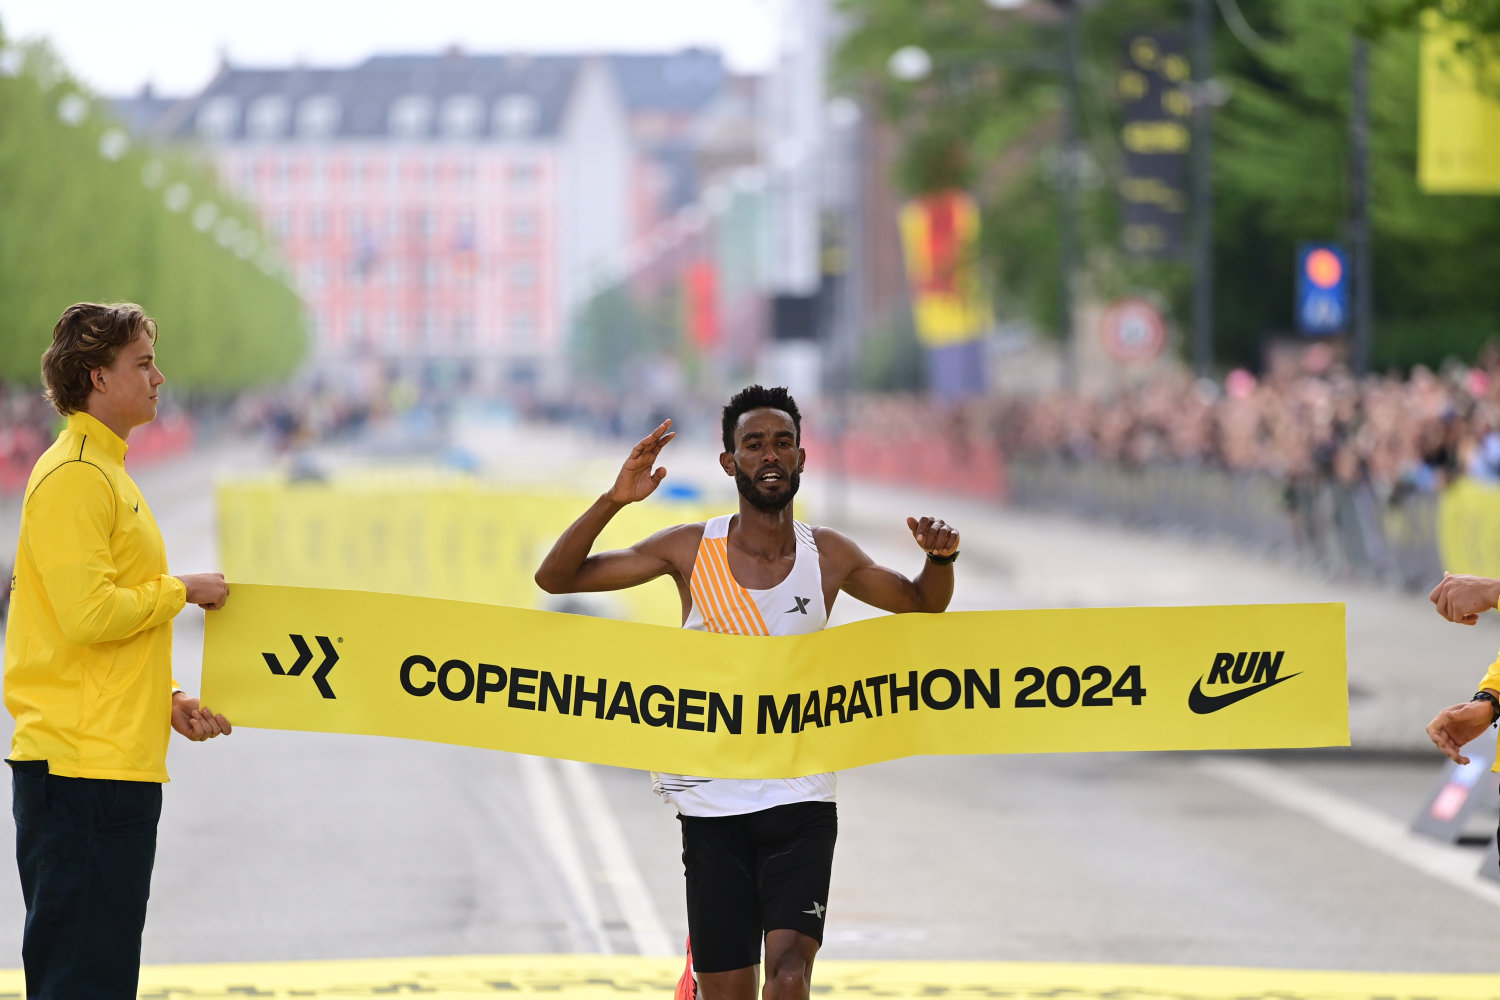 etiopisk født løber sikrer bahrain sejr i copenhagen marathon